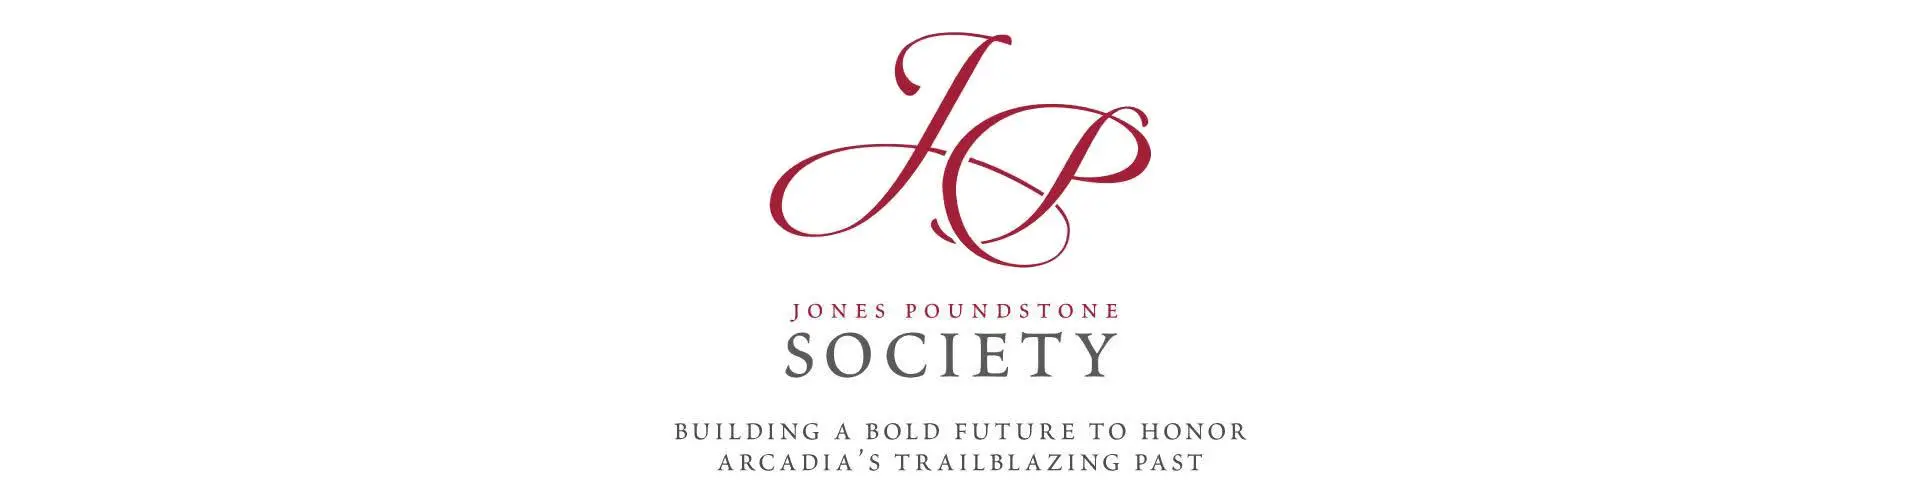 Jones Poundstone Society logo